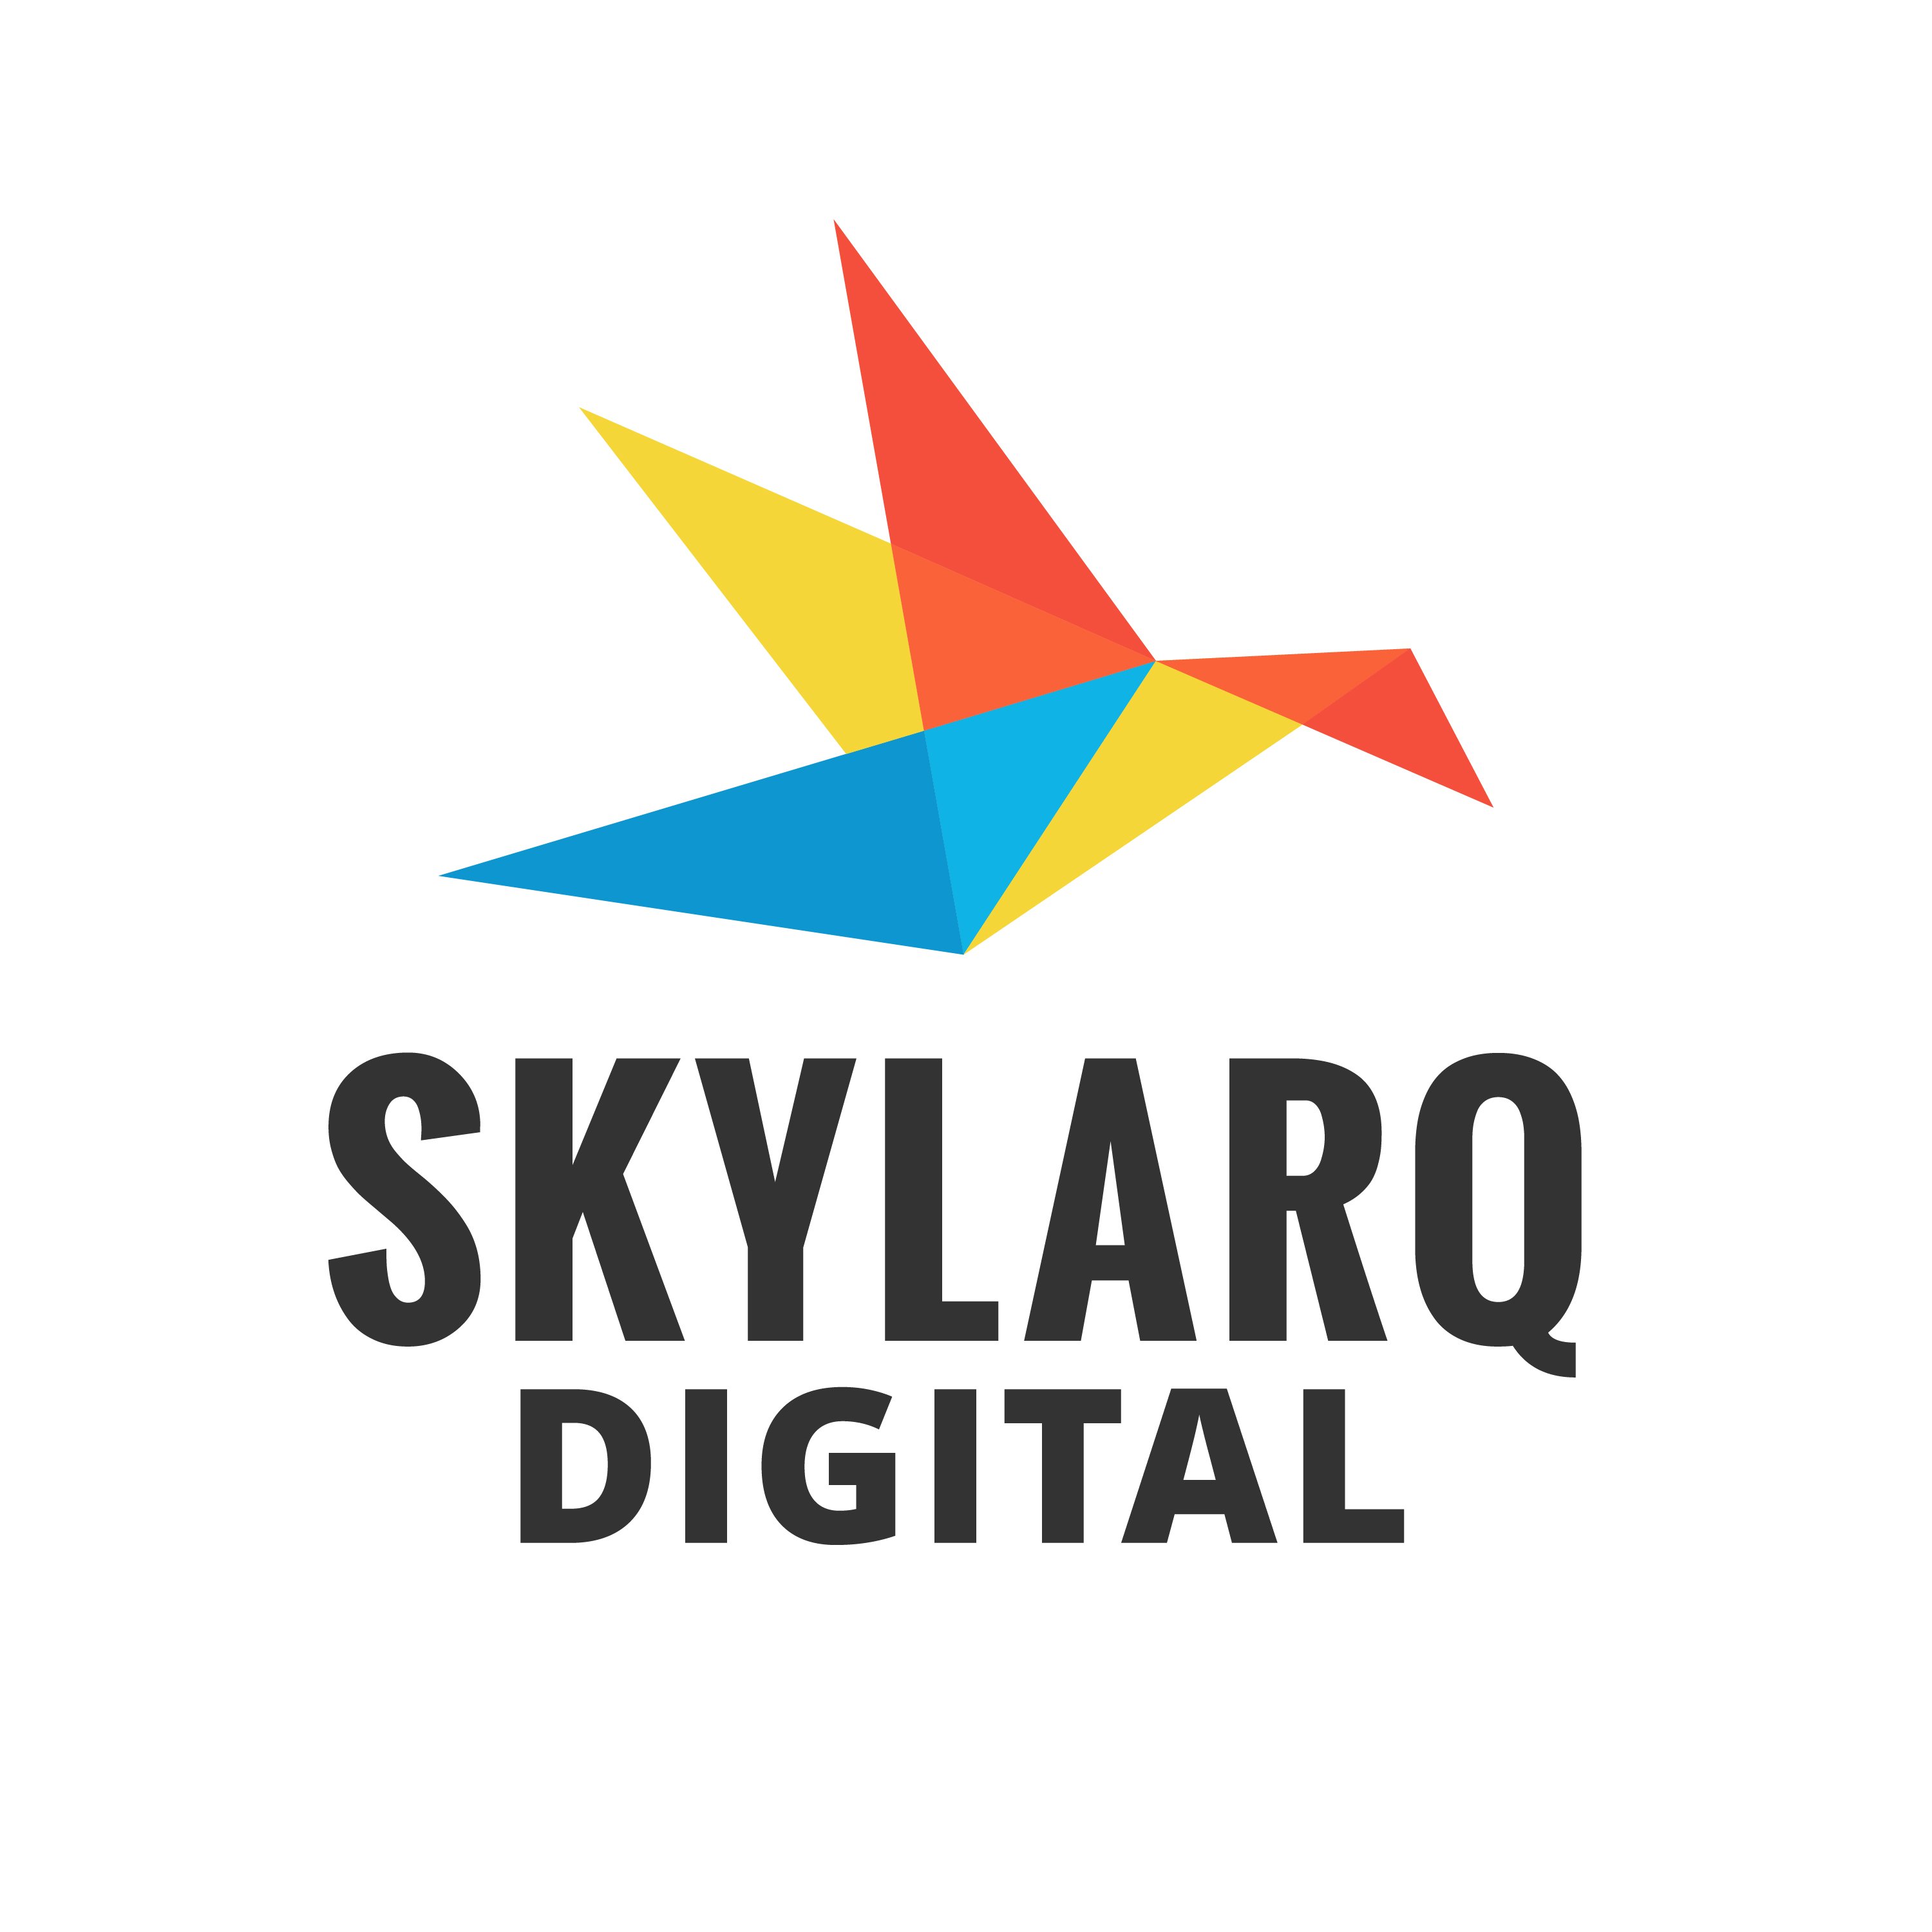 Skylarq Digital